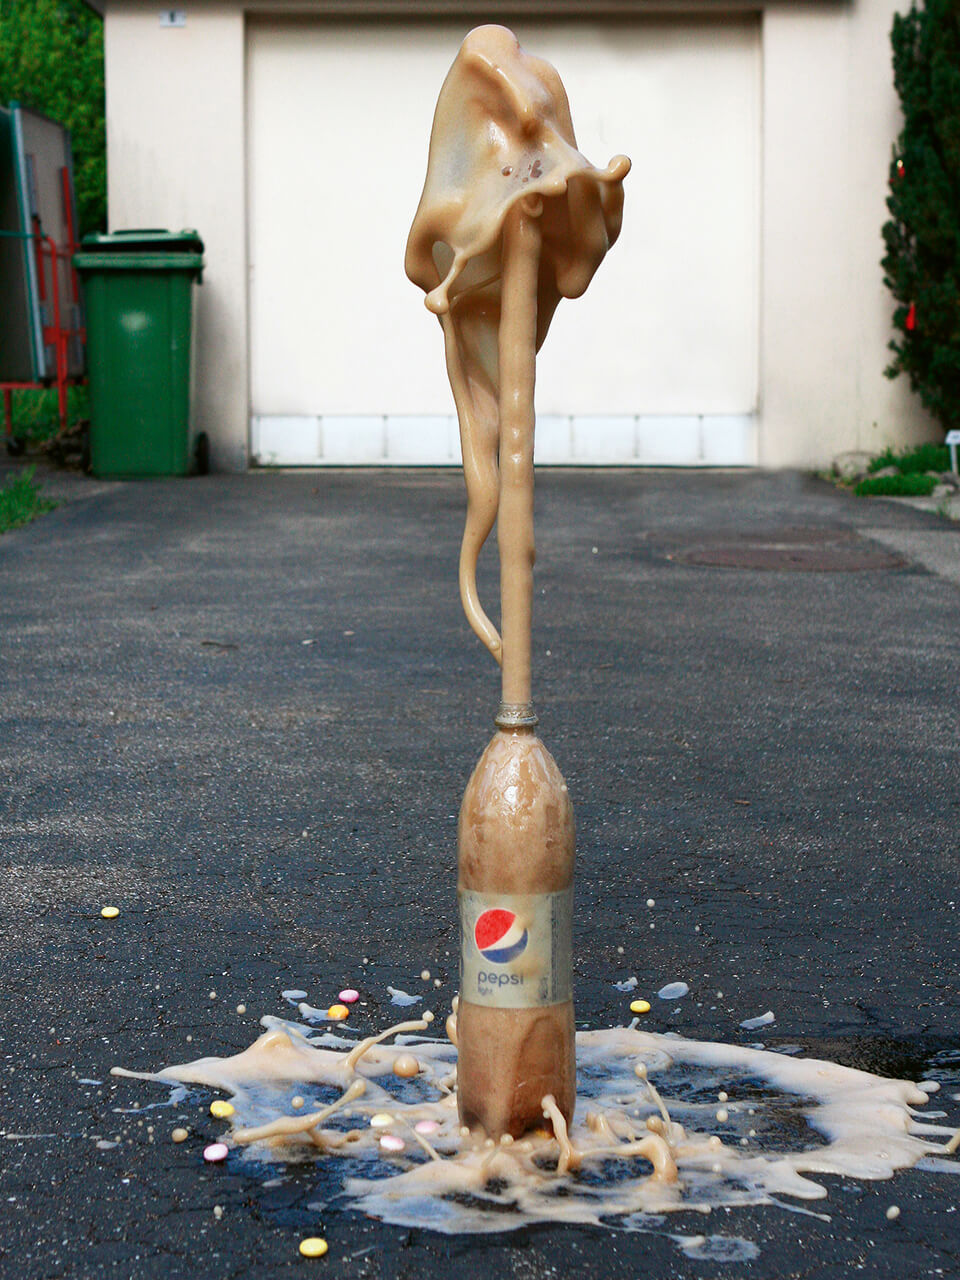 Pepsi-Vulkan